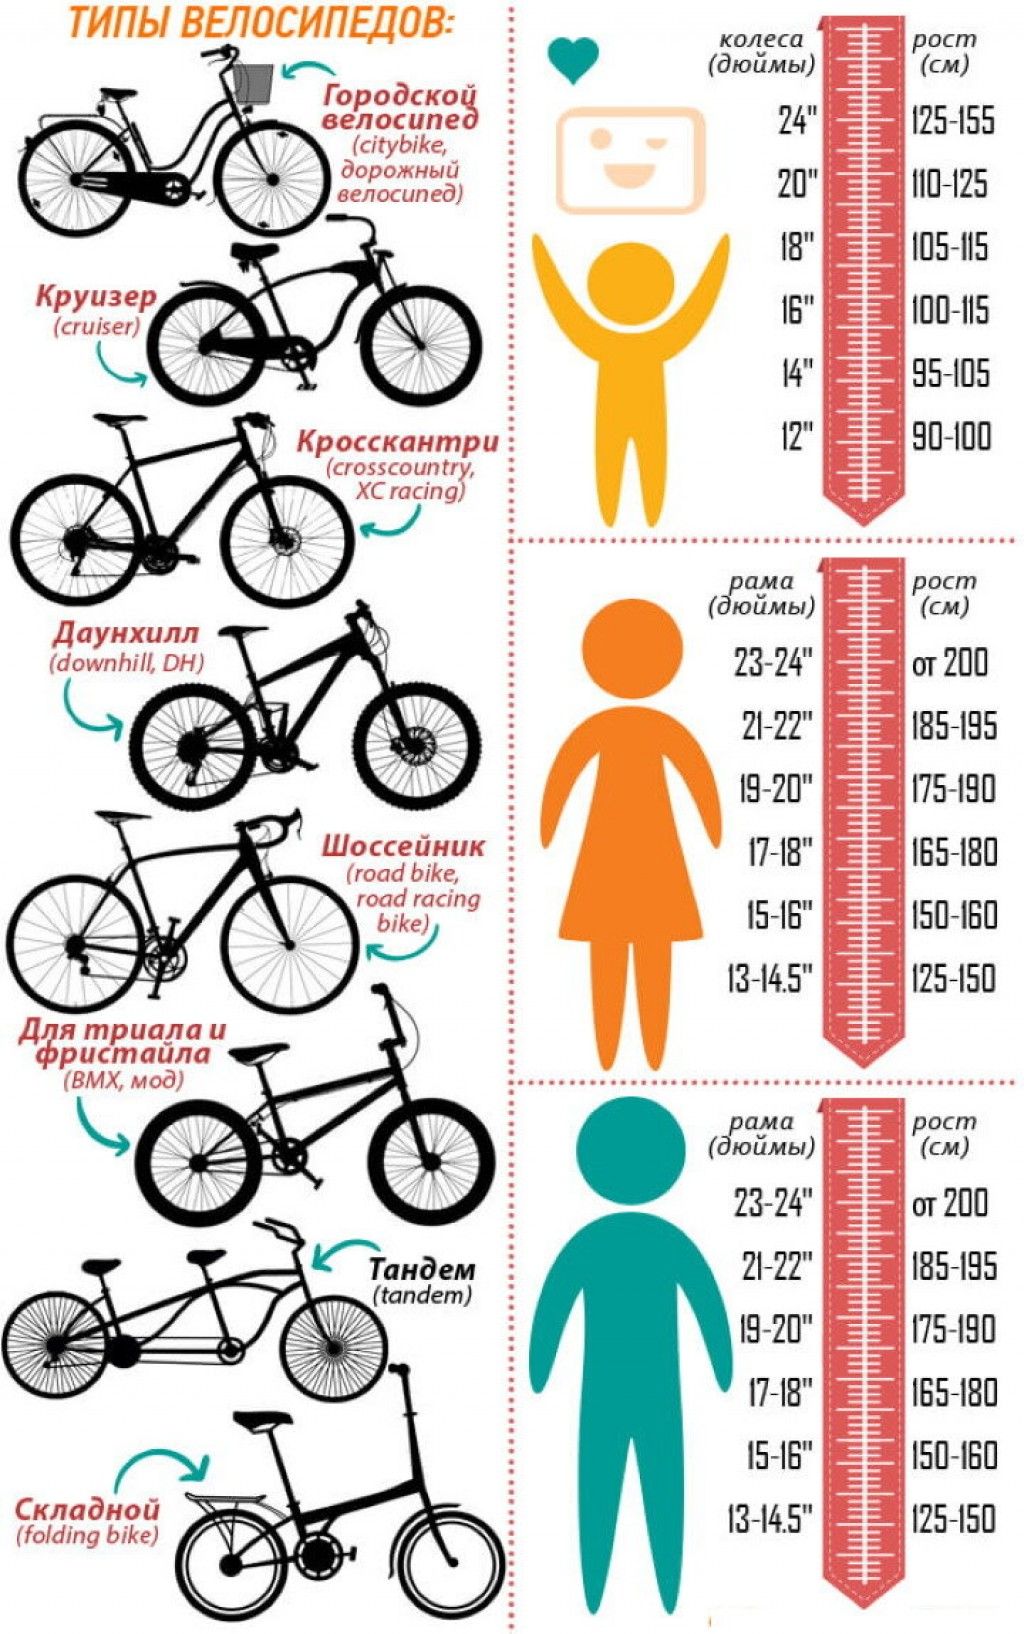 Как подобрать велосипед мужчине. Как подобрать размер рамы велосипеда по росту ребенка. Как выбрать размер рамы велосипеда по росту ребенка. Размер рамы и колес велосипеда по росту таблица для детей. Размер рамы у велосипеда с 26 колесами.